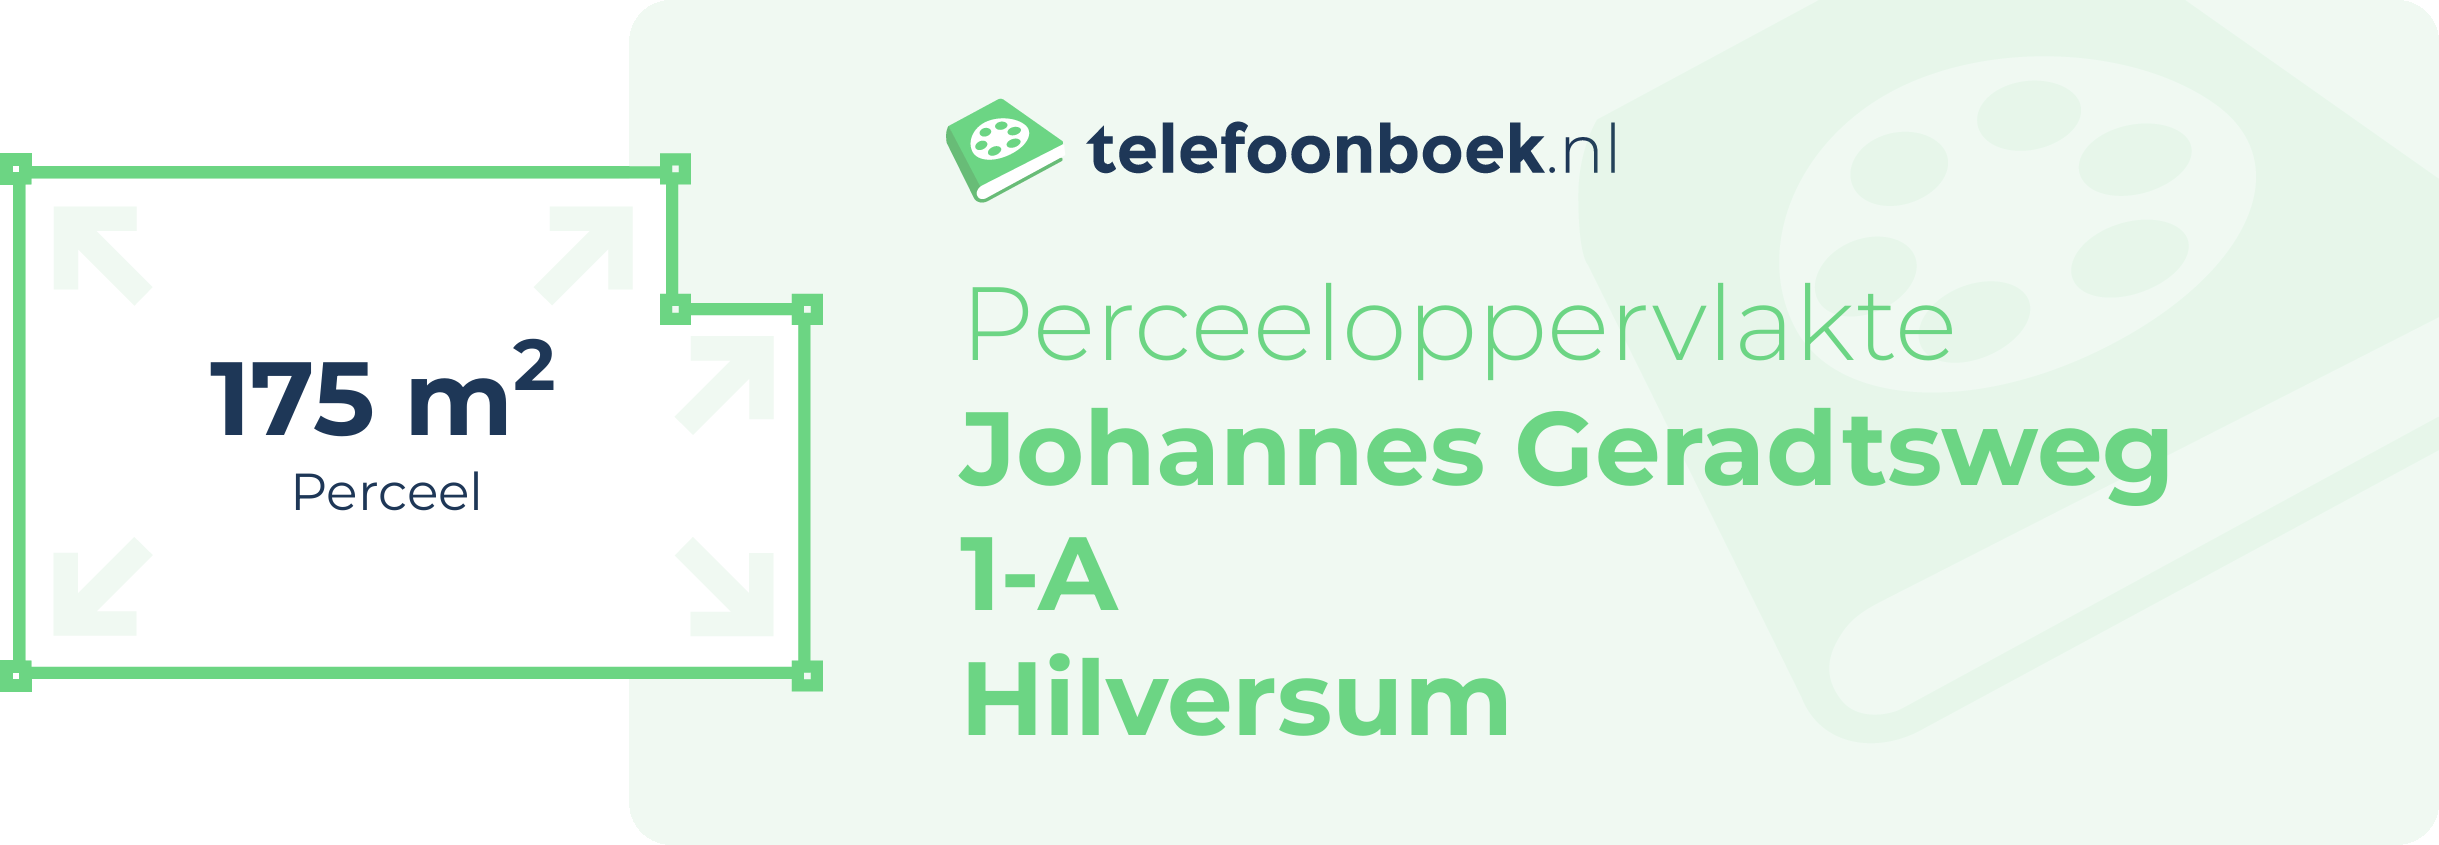 Perceeloppervlakte Johannes Geradtsweg 1-A Hilversum